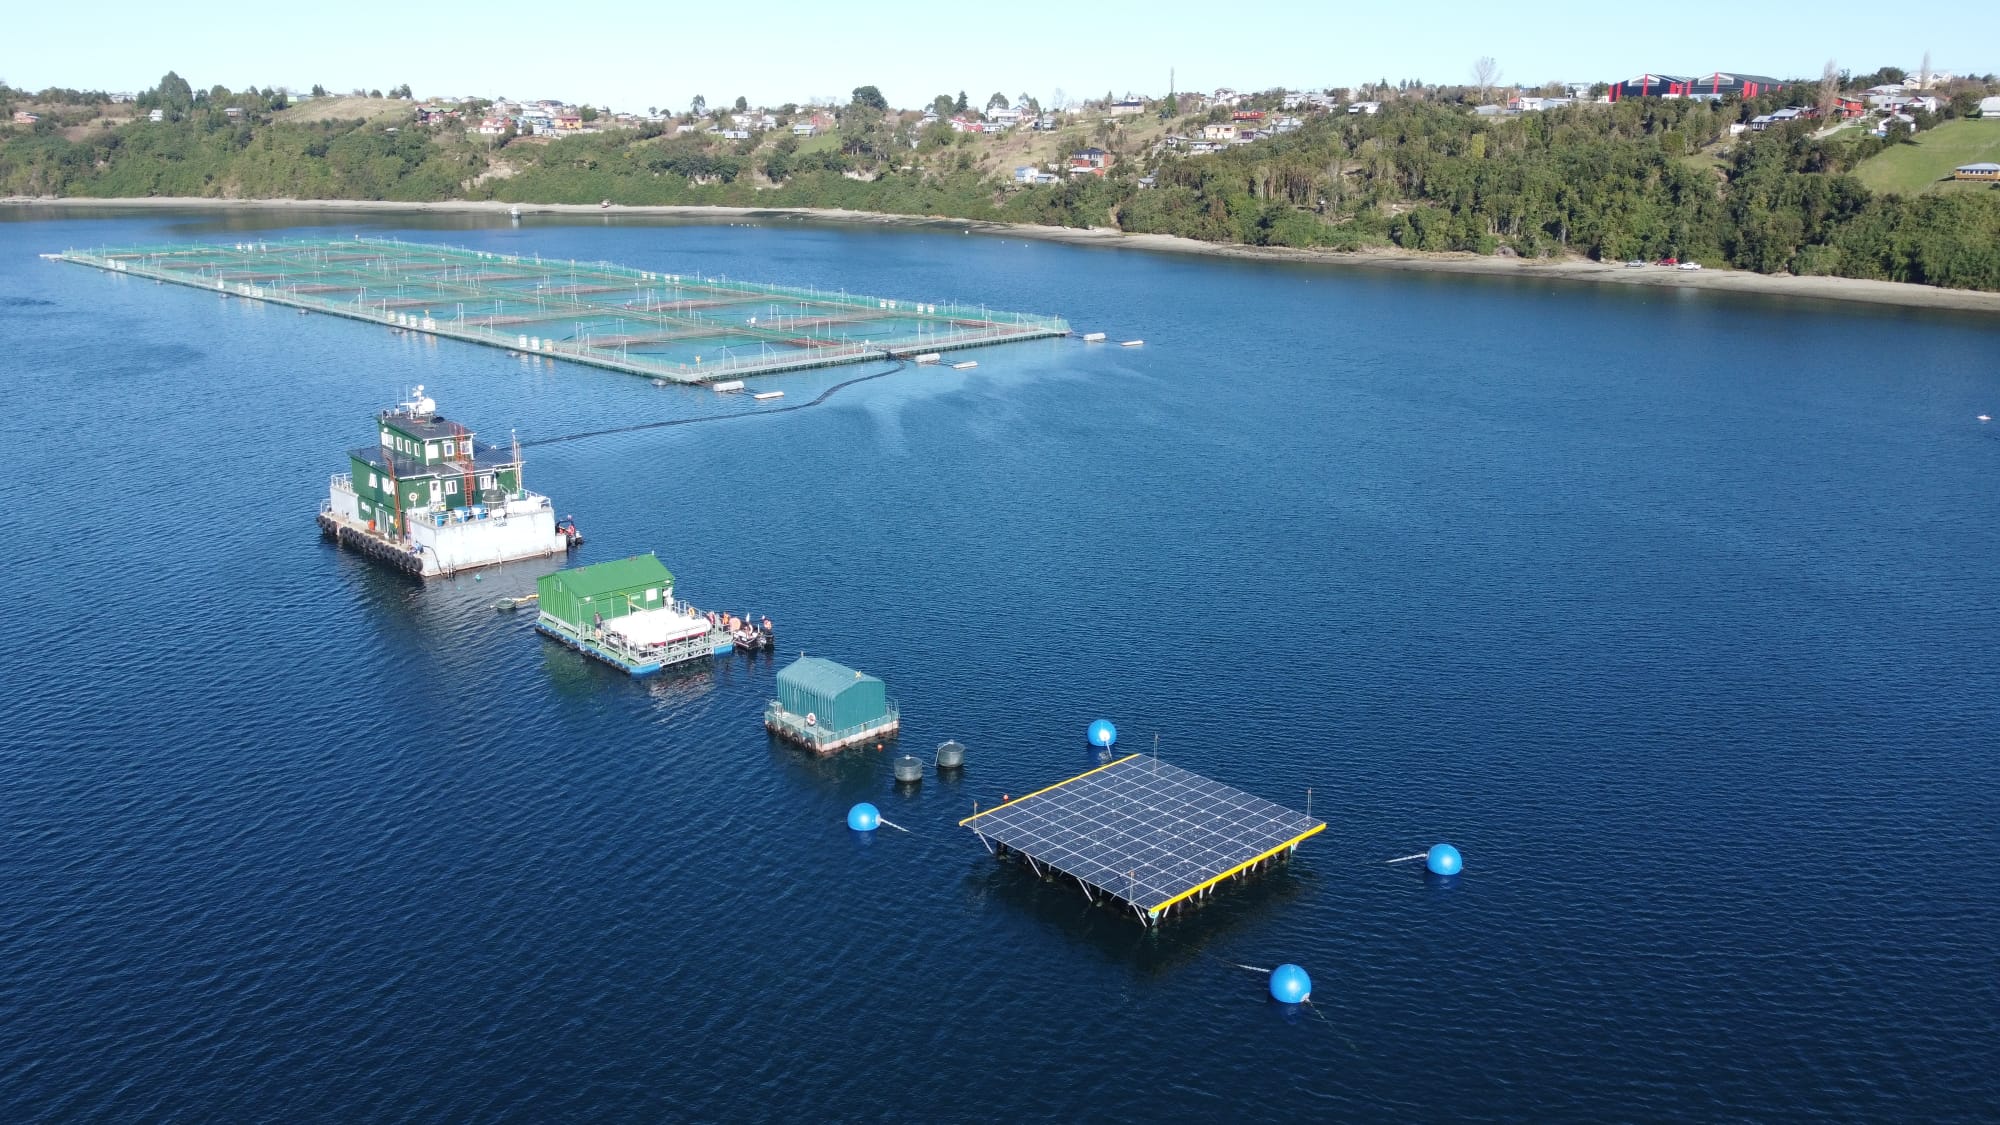 GASCO impulsa primera plataforma solar flotante de generación de energía para Salmones Aysén